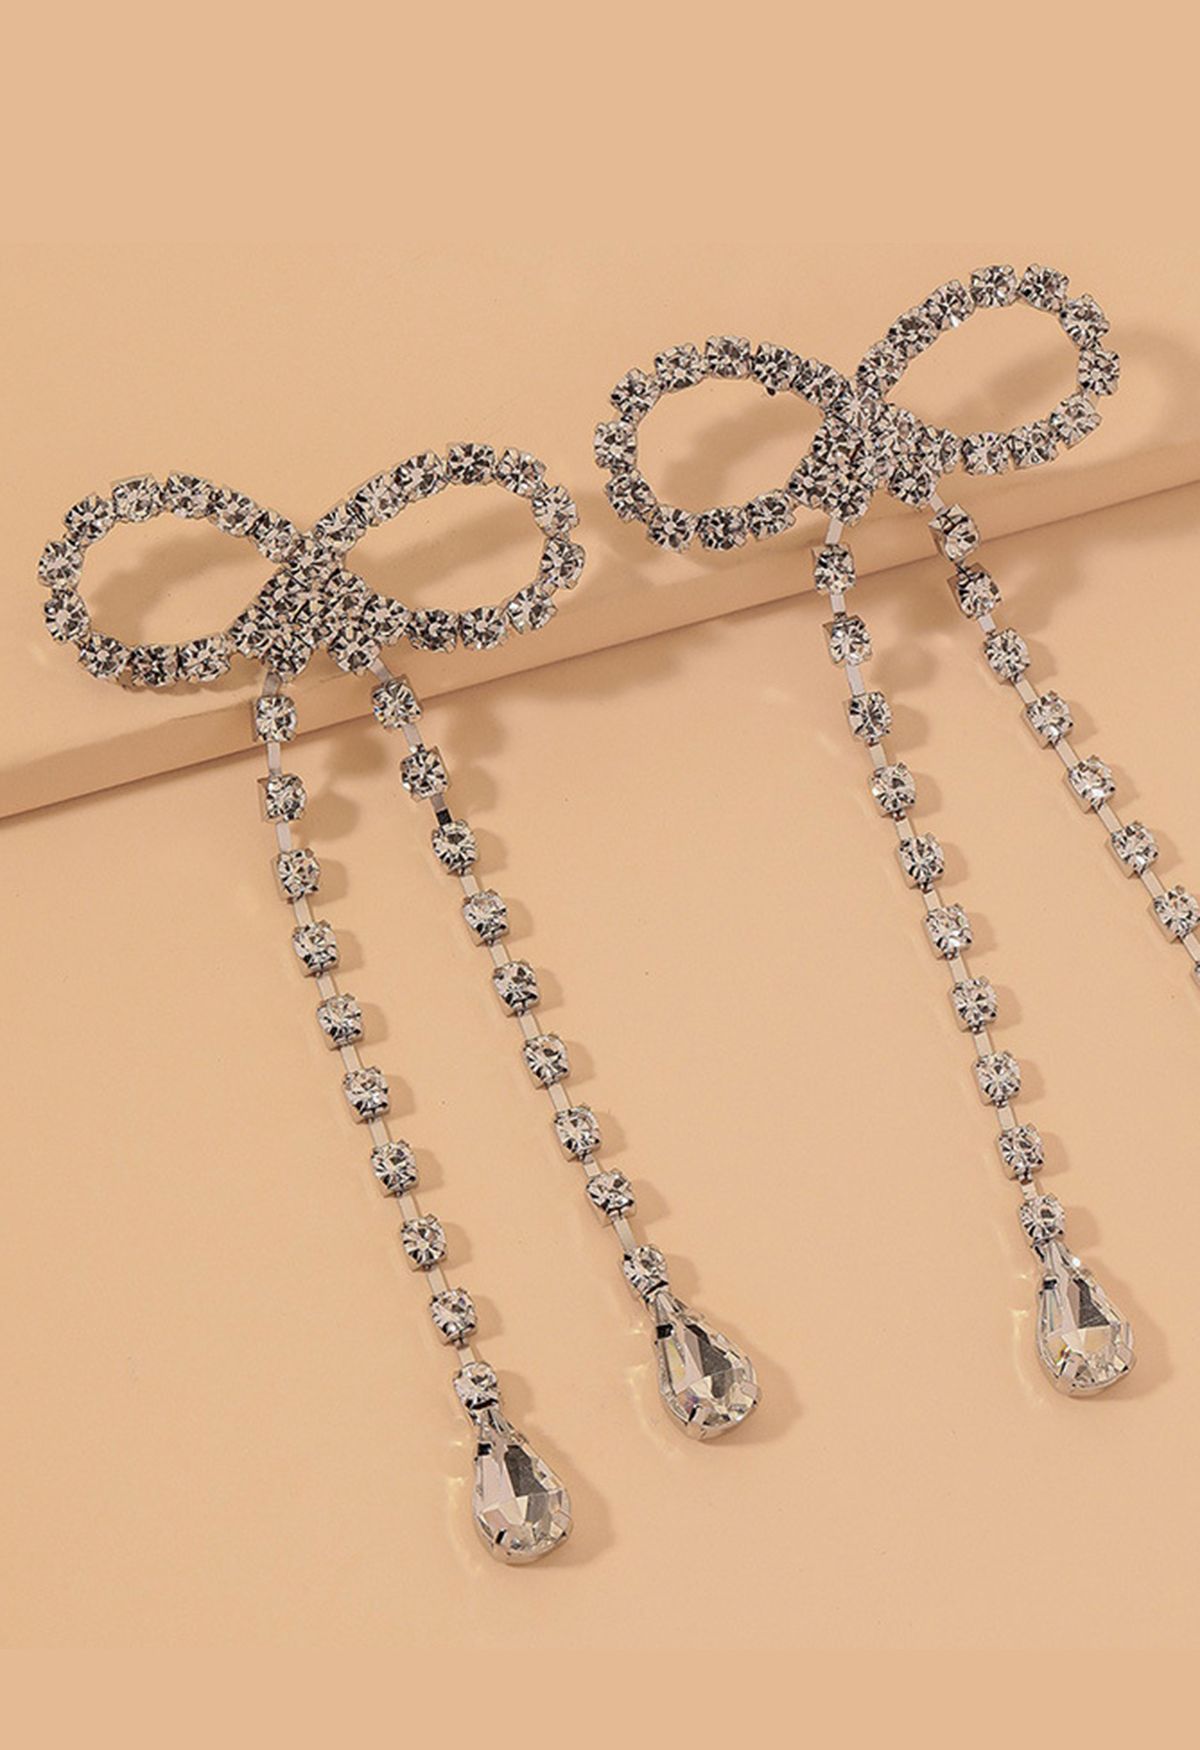 Full Diamond Bowknot Drop Earrings